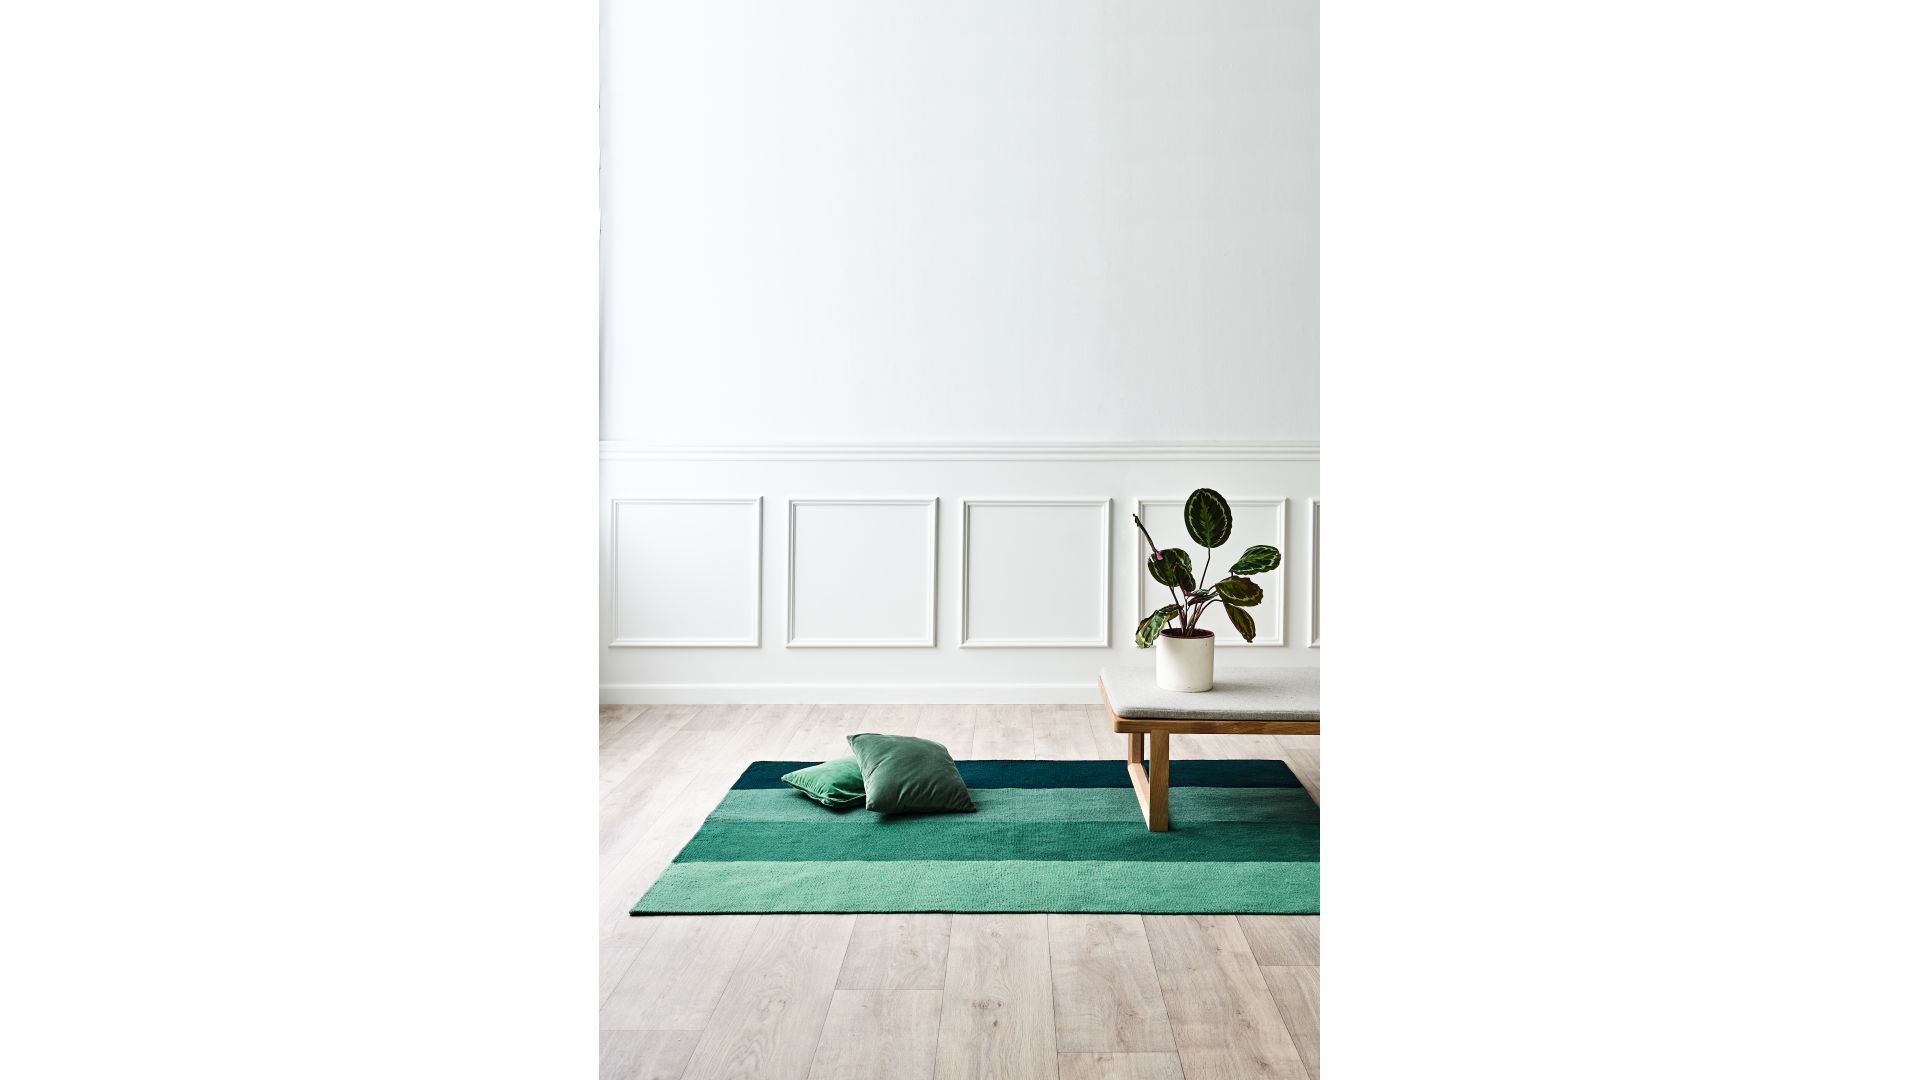 Dywan na balkon/taras, z recyklingu, w kolorze zielonym/Carpets&More. Produkt zgłoszony do konkursu Dobry Design 2020.